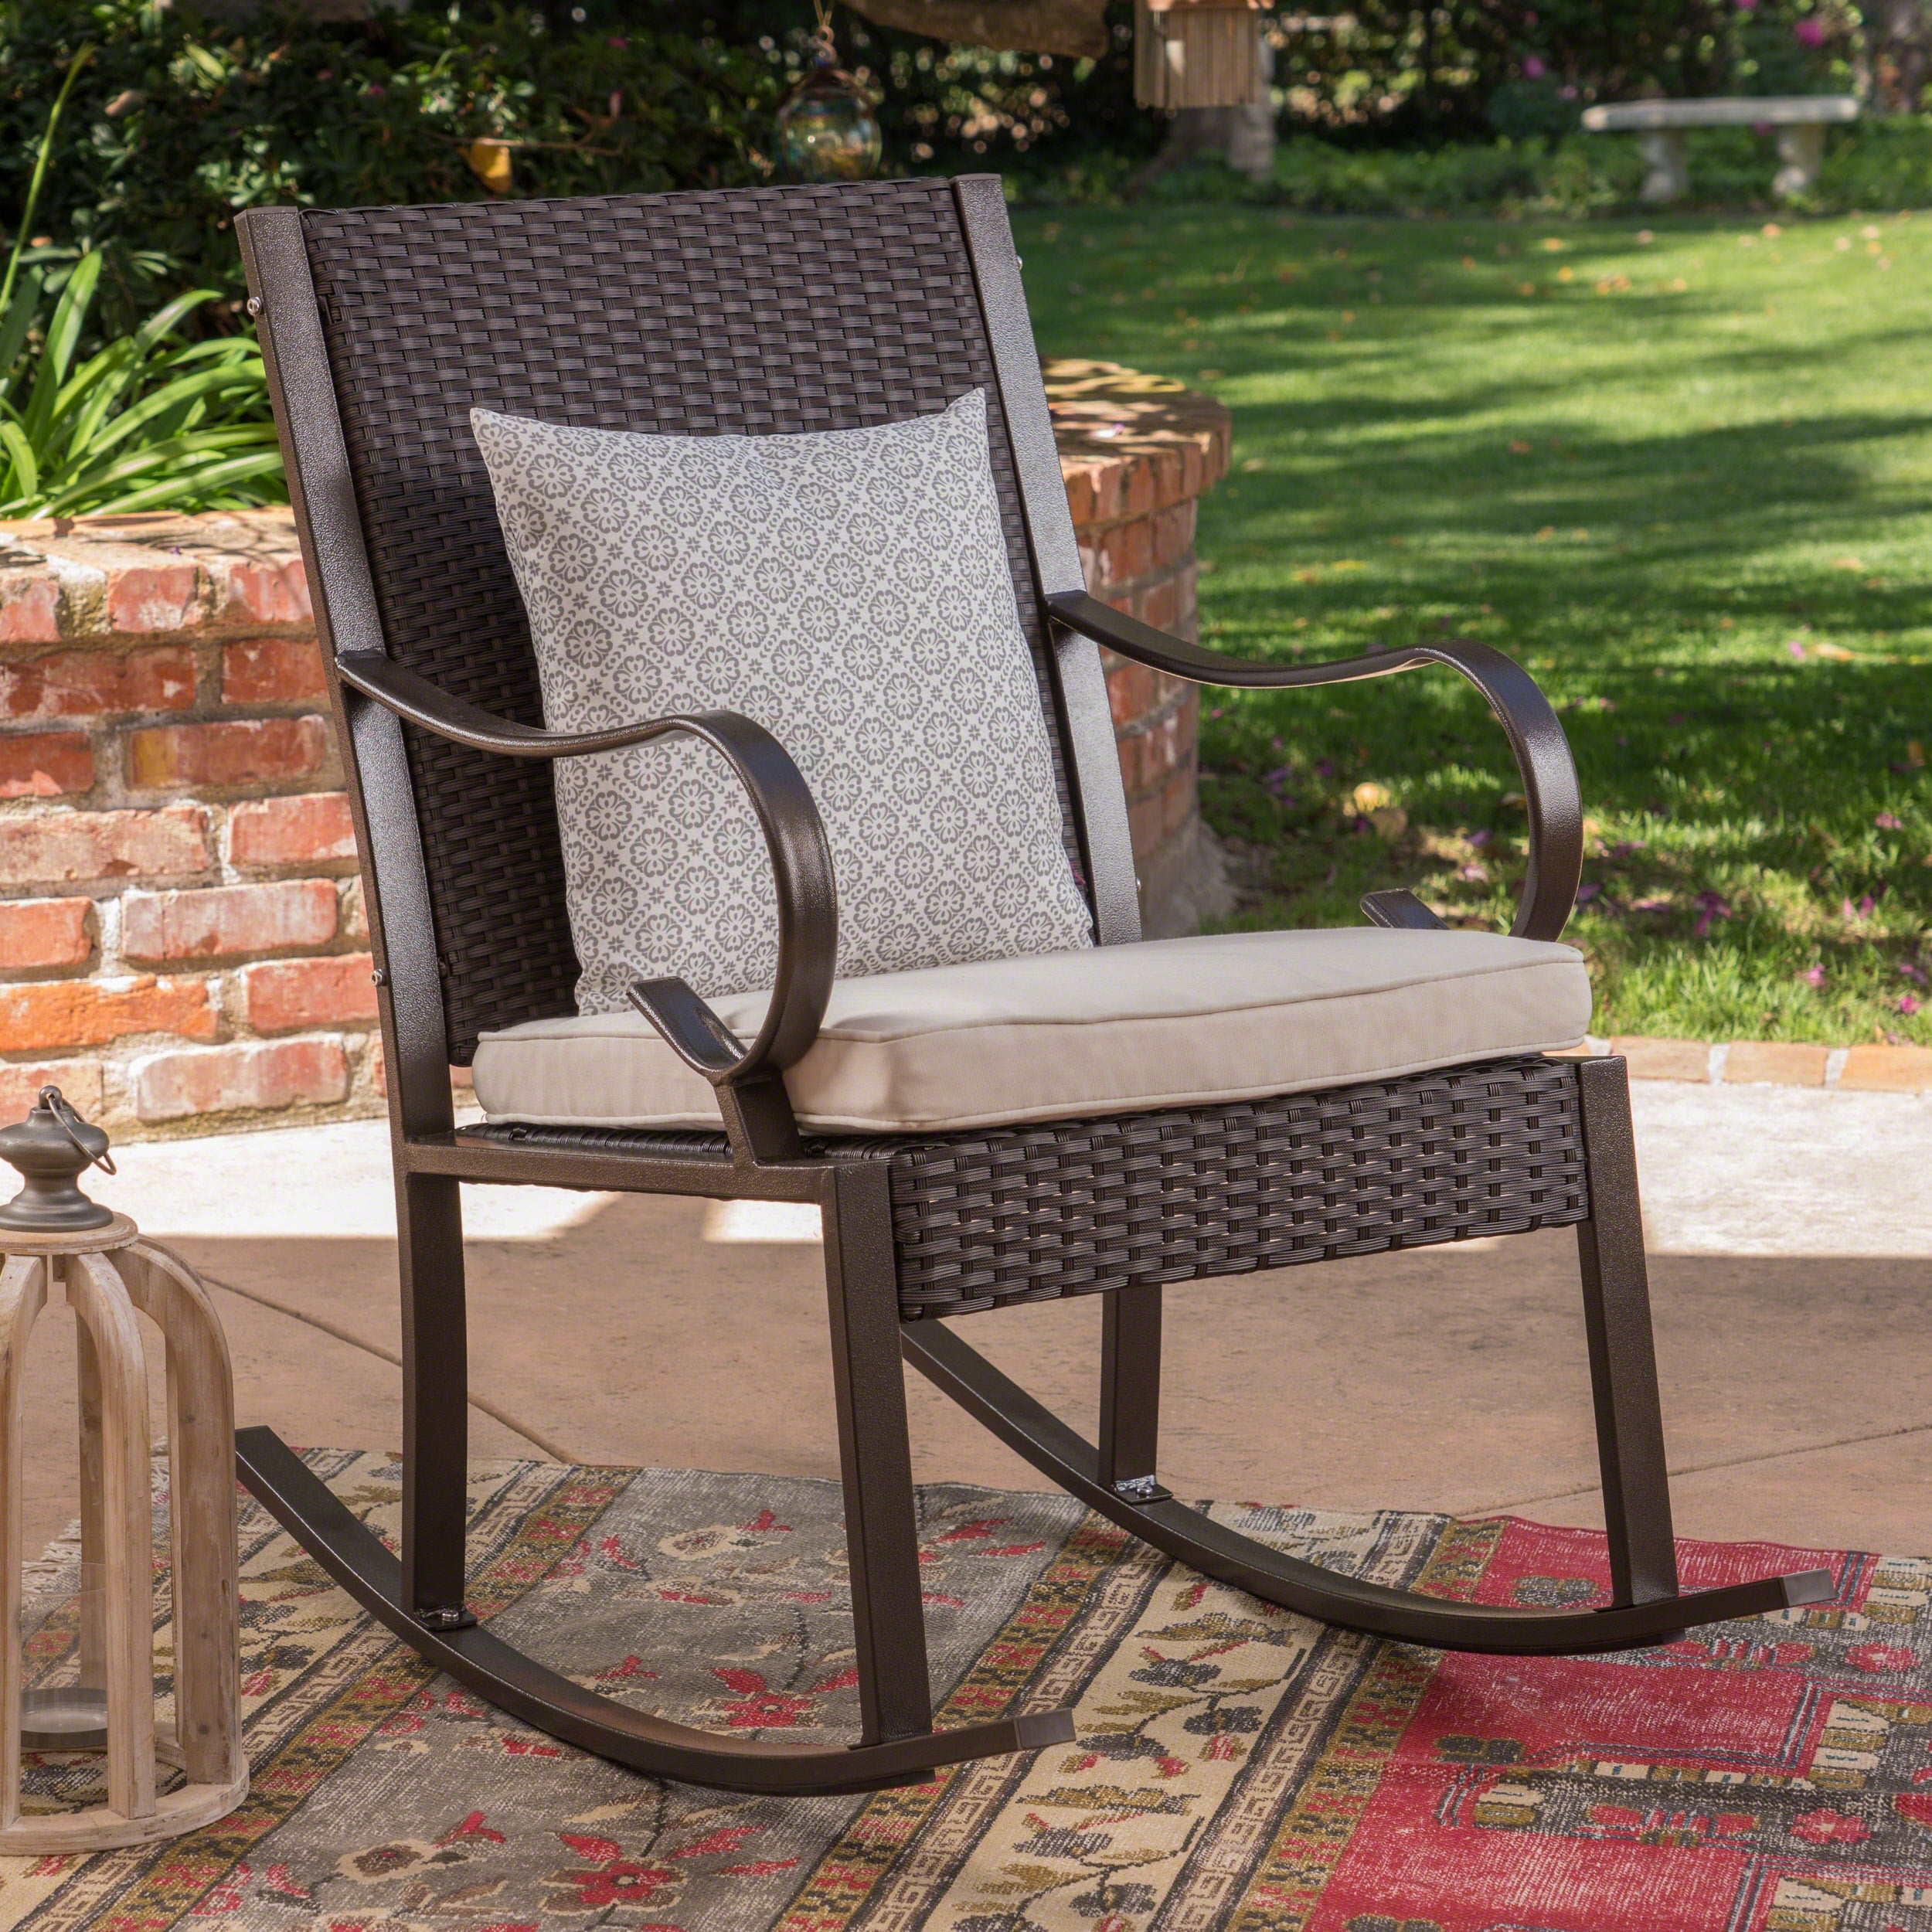 Outdoor Wicker Rocking Chair with Cushion, Cream, Dark